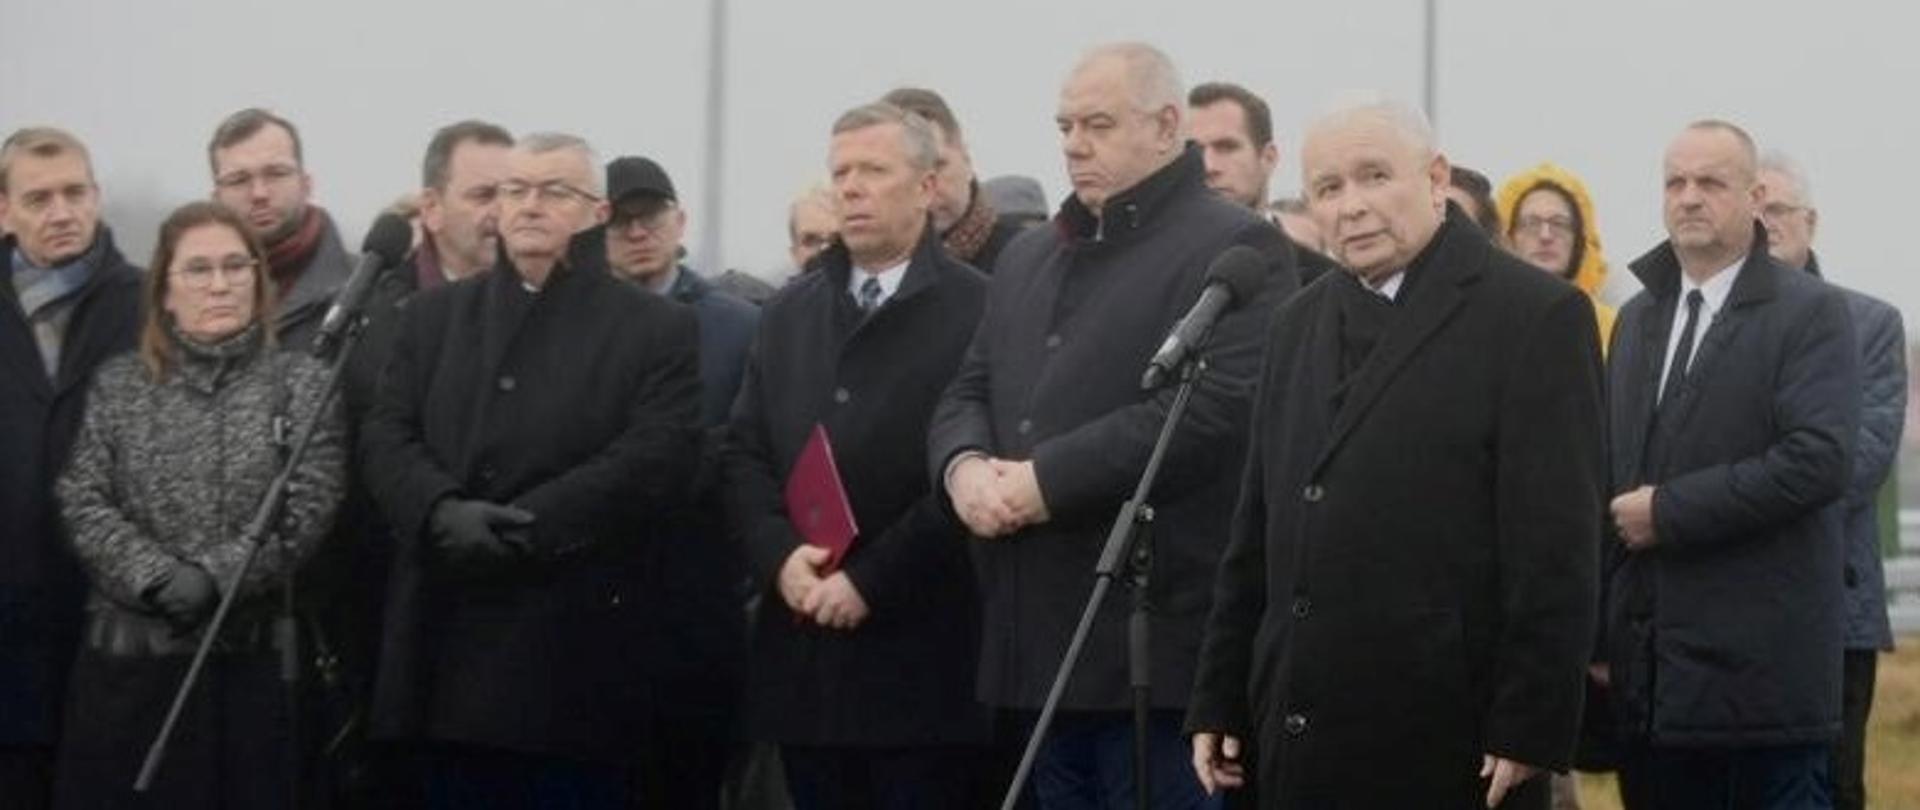 Na zdjęciu grupa kilkudziesięciu ludzi stoi na nowej drodze ekspresowej. Do mikrofonu przemawia premier Jarosław Kaczyński.